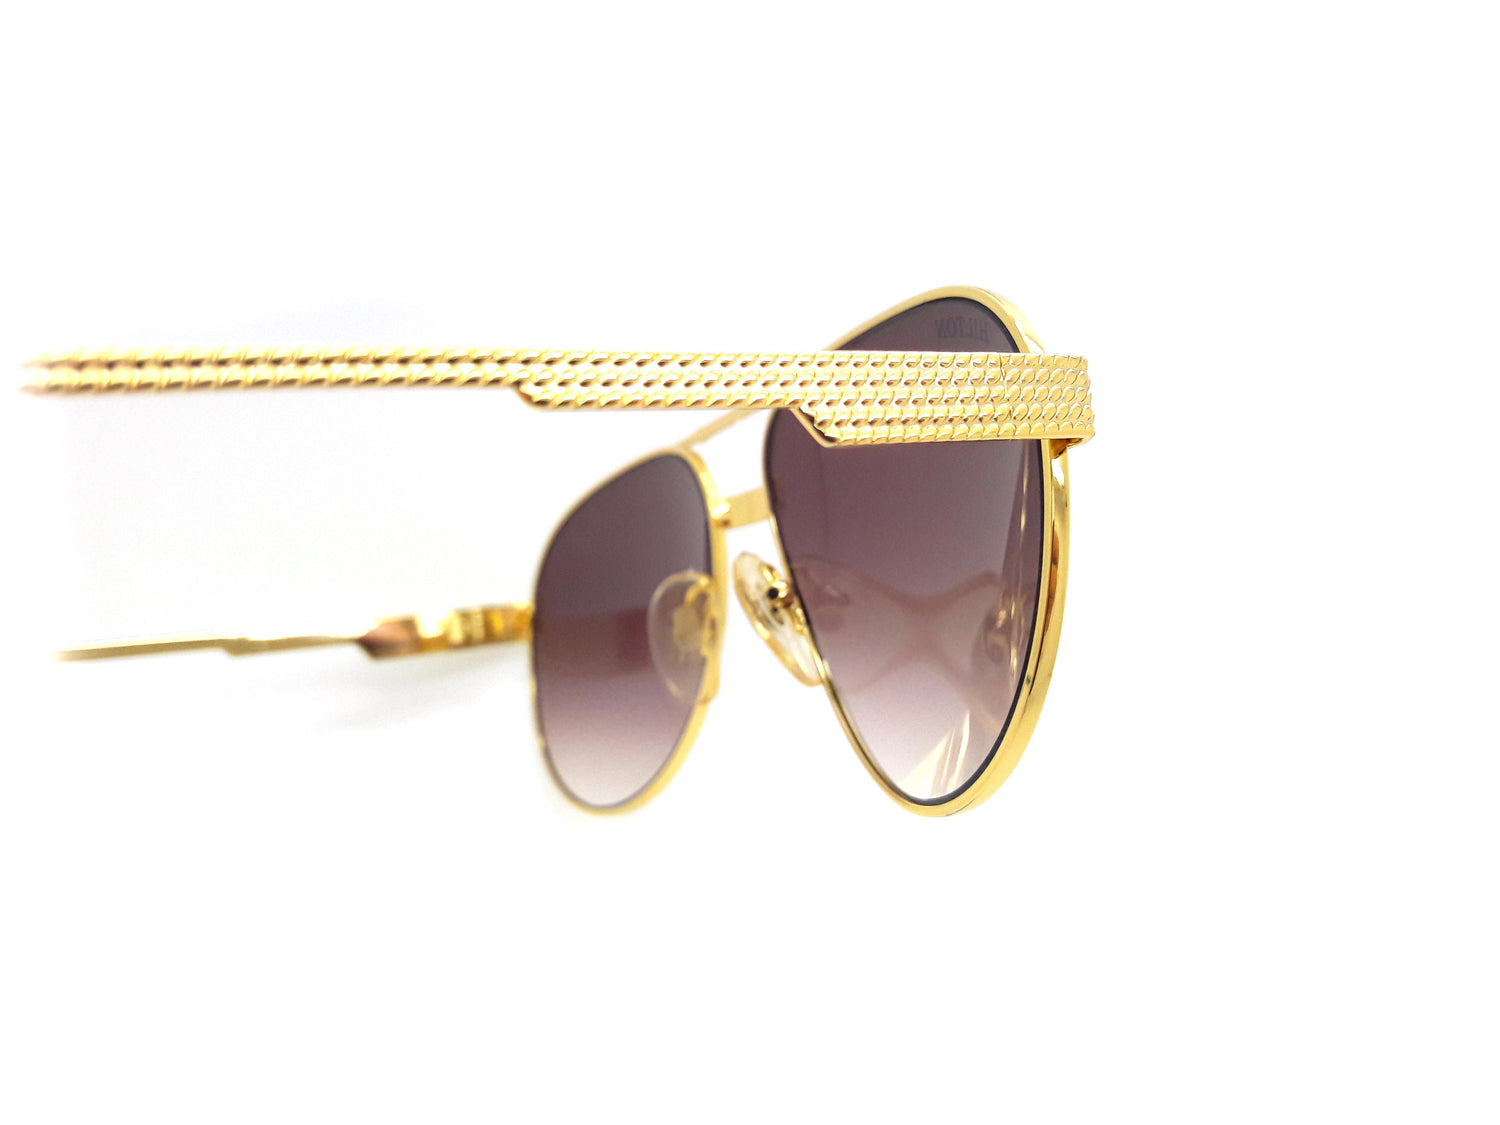 Paris Hilton - 2000s | 2000s sunglasses, Stylish glasses, Glasses fashion